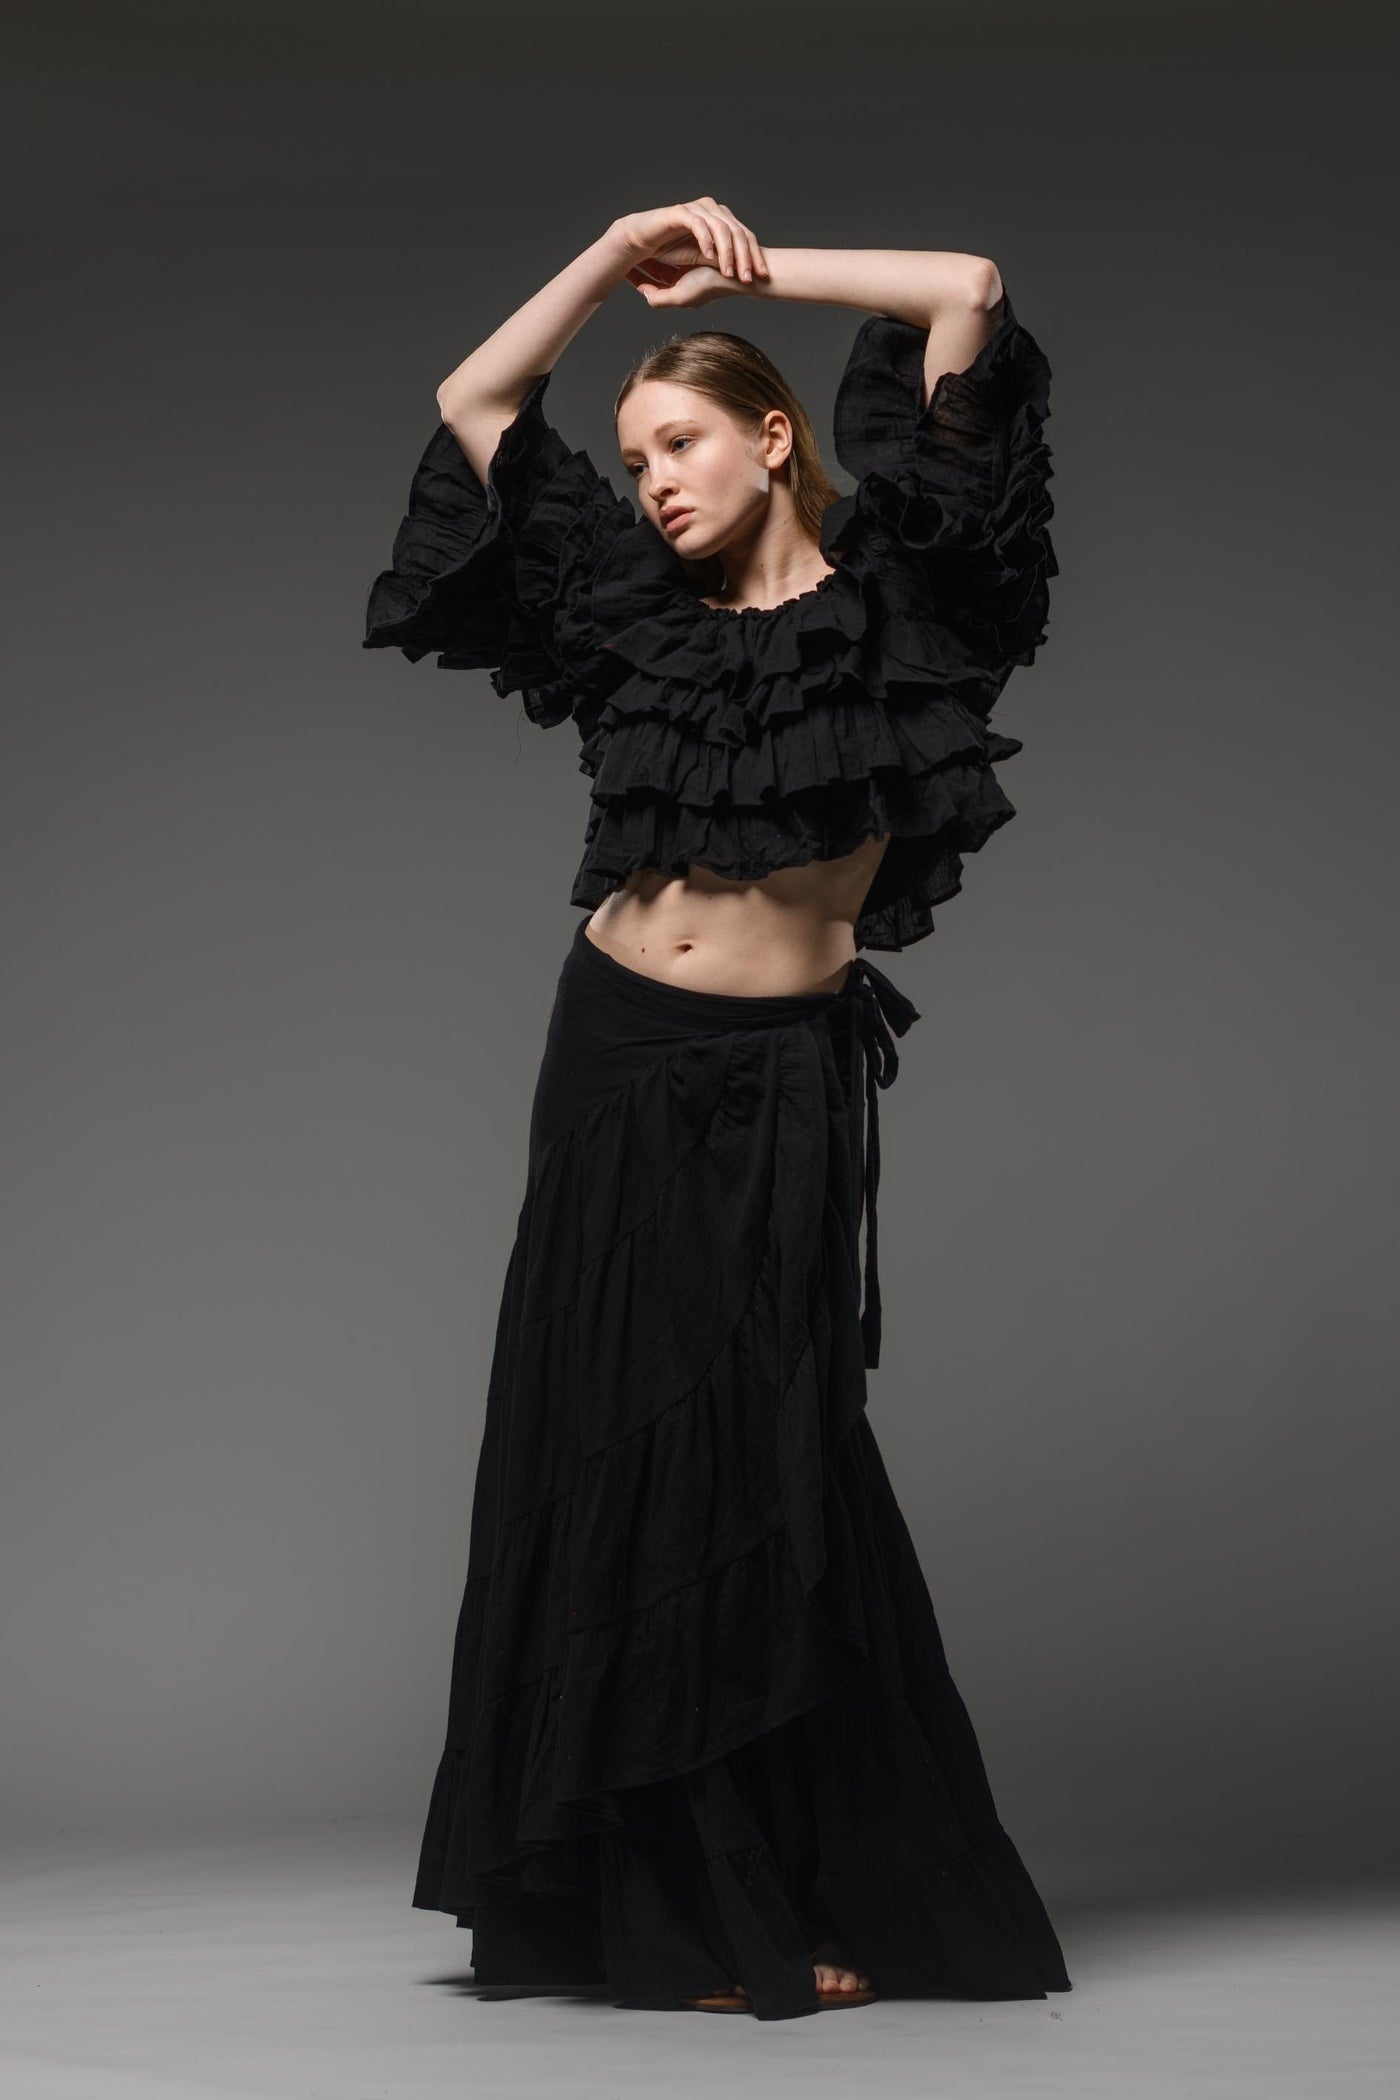 Bohemian gypsy fashion multilayer ruffled black top crop